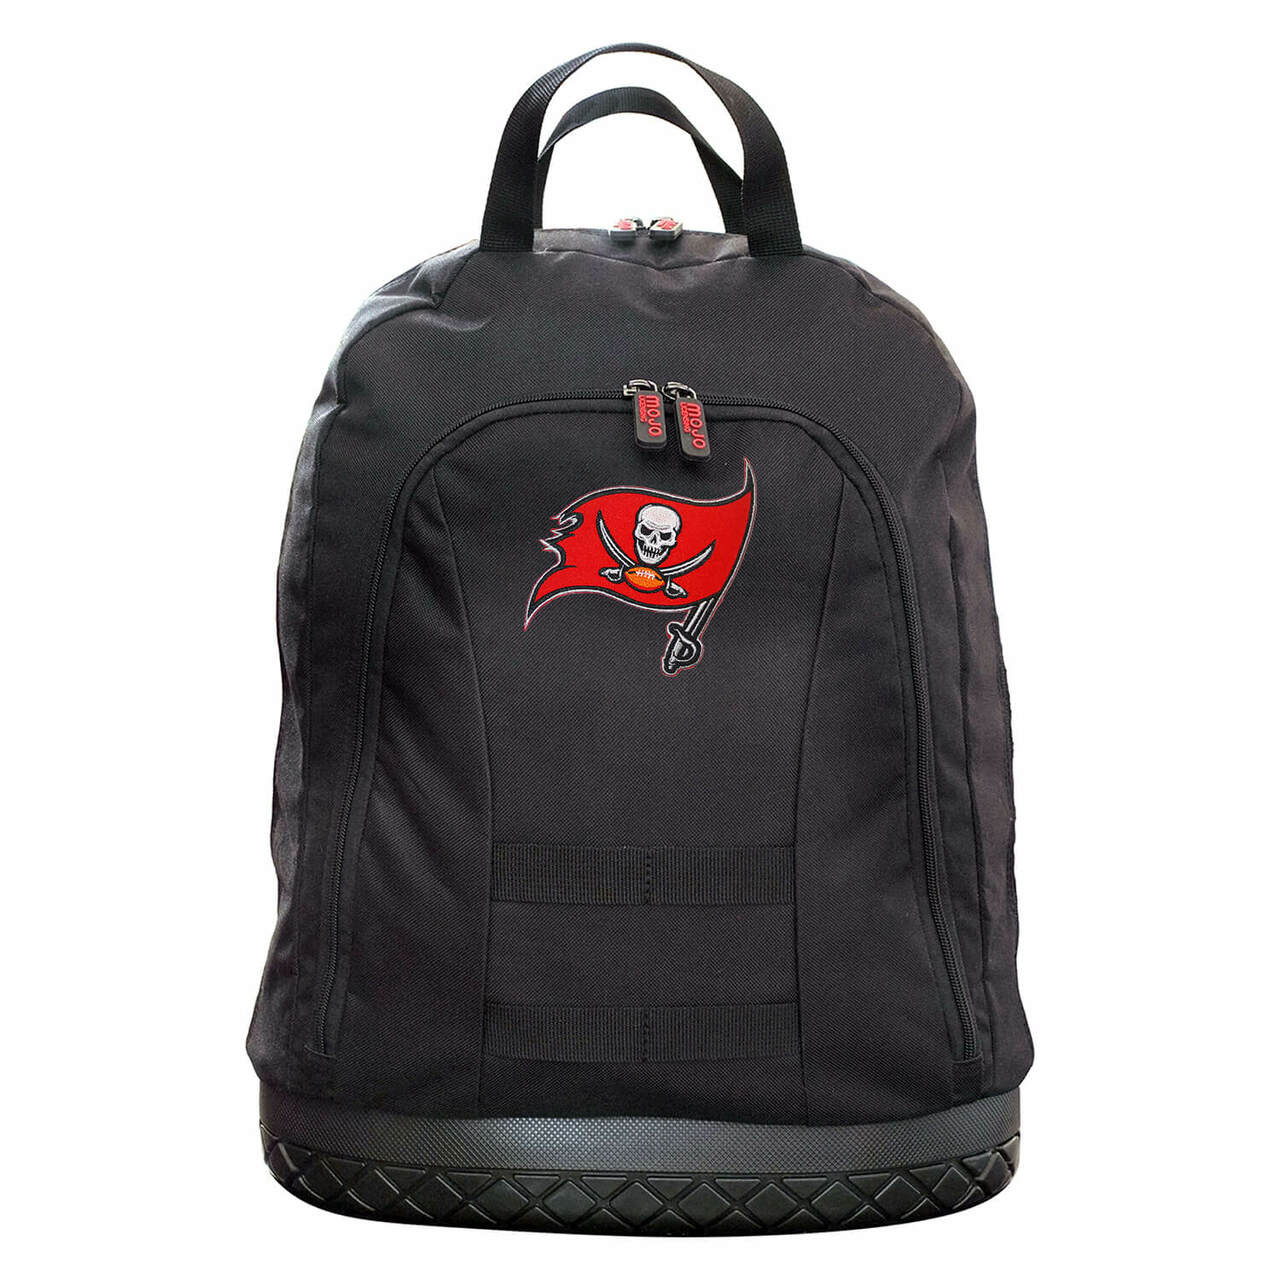 Tampa Bay Buccaneers Backpack Tool Bag